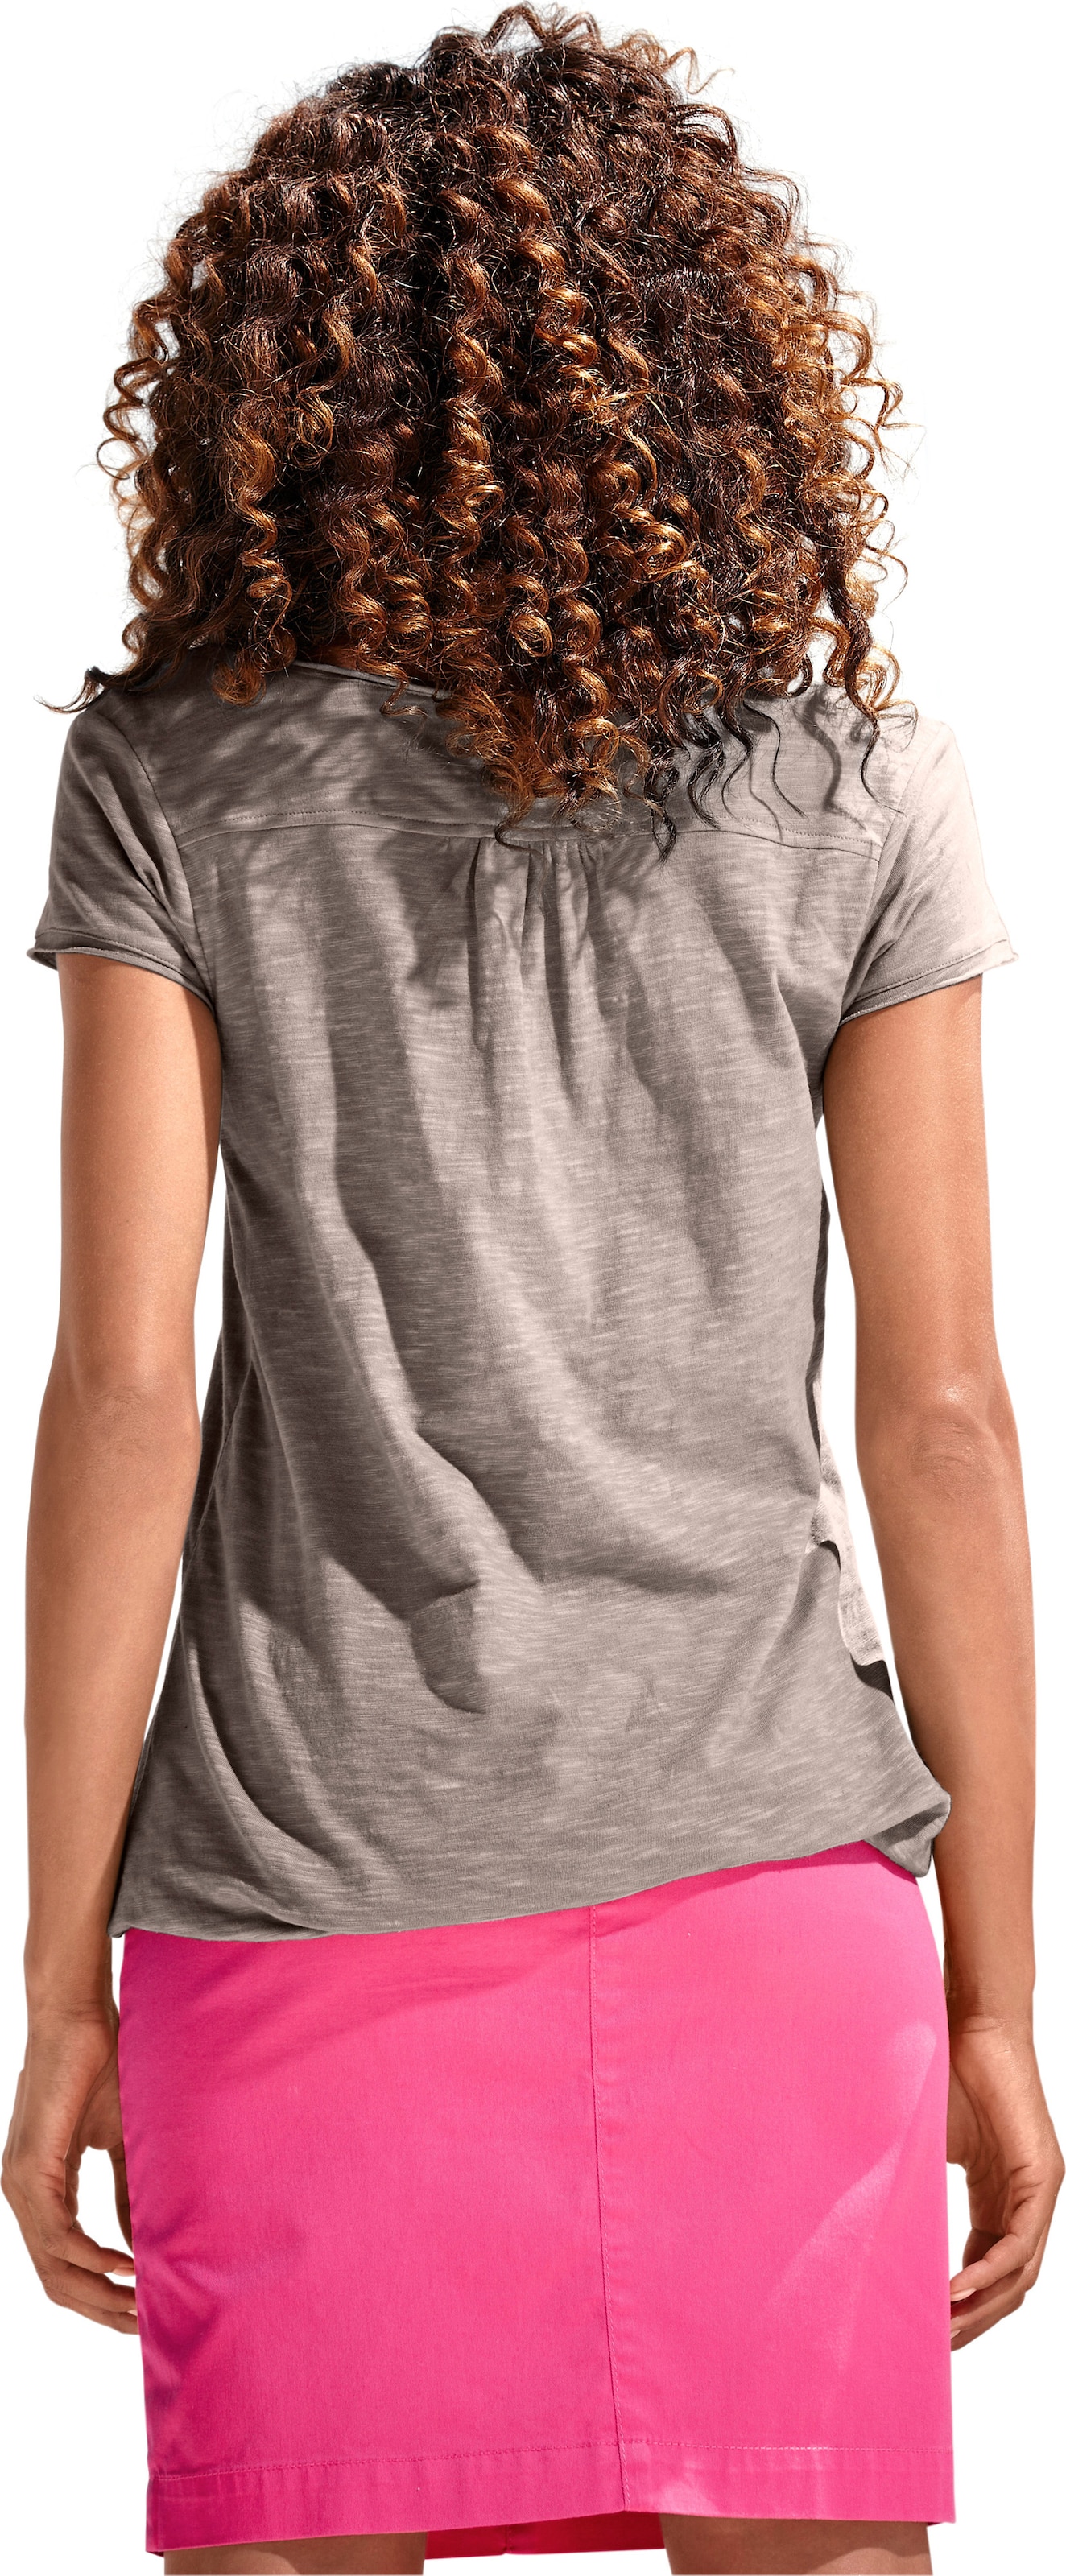 und modern günstig Kaufen-Rundhals-Shirt in taupe von heine. Rundhals-Shirt in taupe von heine <![CDATA[Rundhals-Shirt Moderne Form mit Gummizugbund. Mit Spitzen-Details und schimmernden Knöpfen. Leichte Shirtware mit Flammé-Effekt.]]>. 